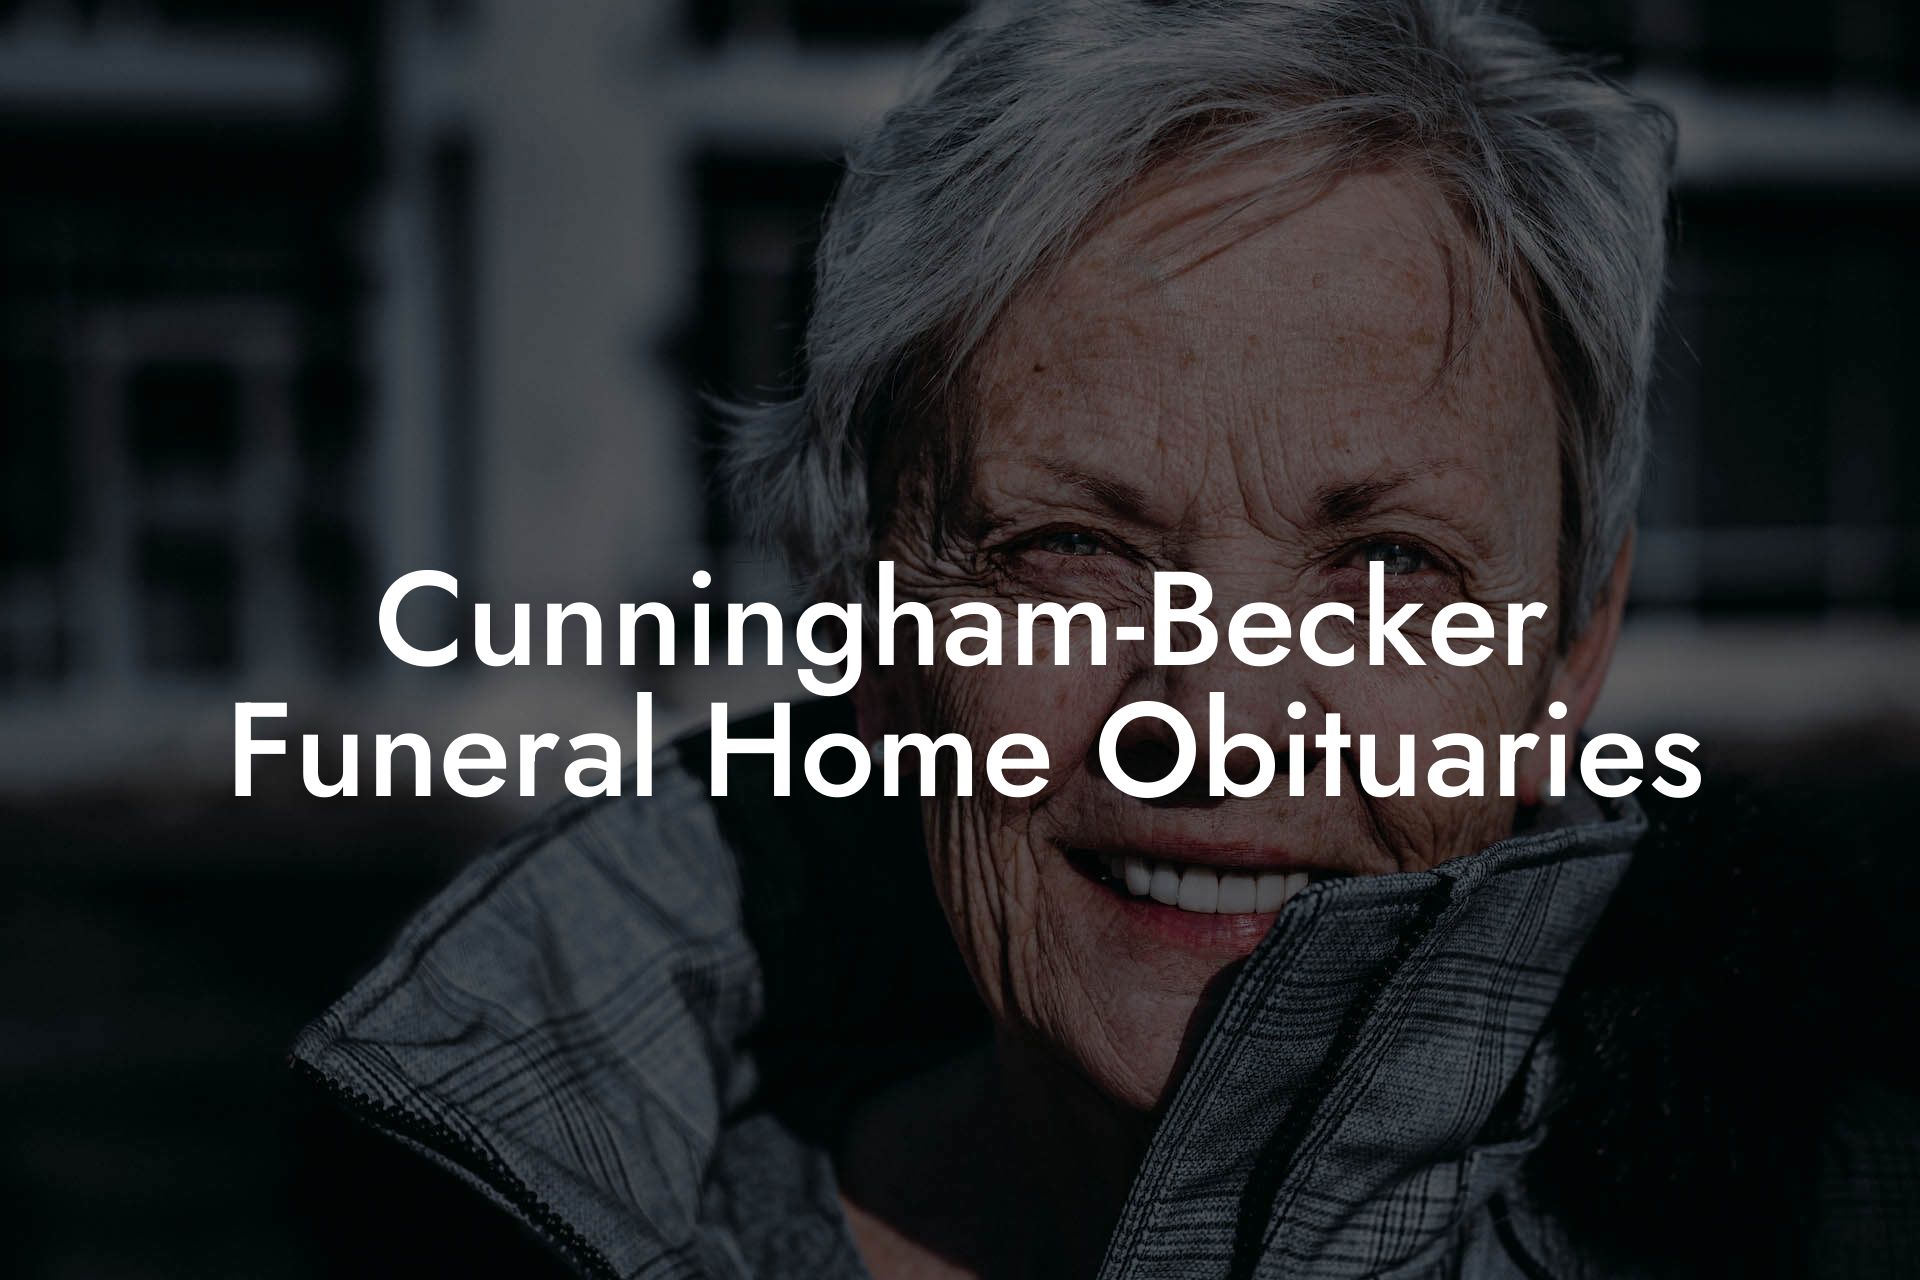 Cunningham-Becker Funeral Home Obituaries